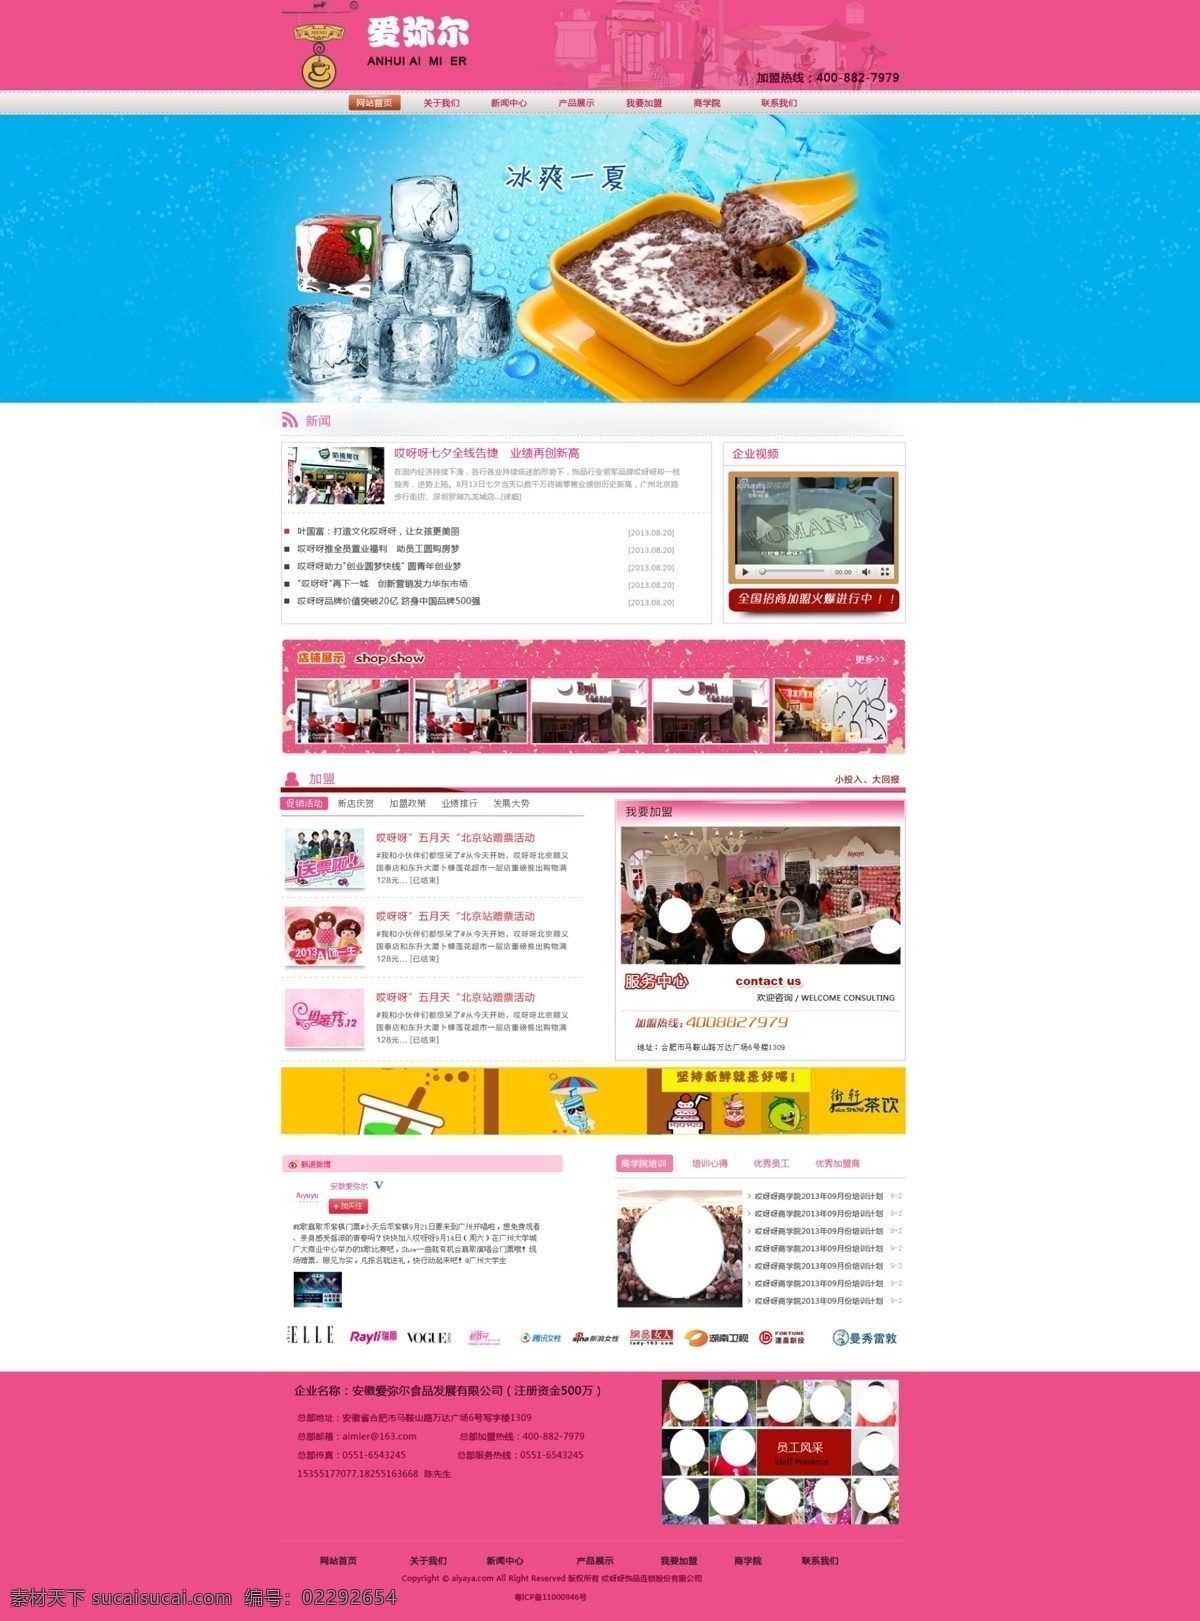 网页模板 psd源文件 电商 公司网站 加盟 企业网站 食品 食品网站 网页素材 营销 首页效果图 紫色